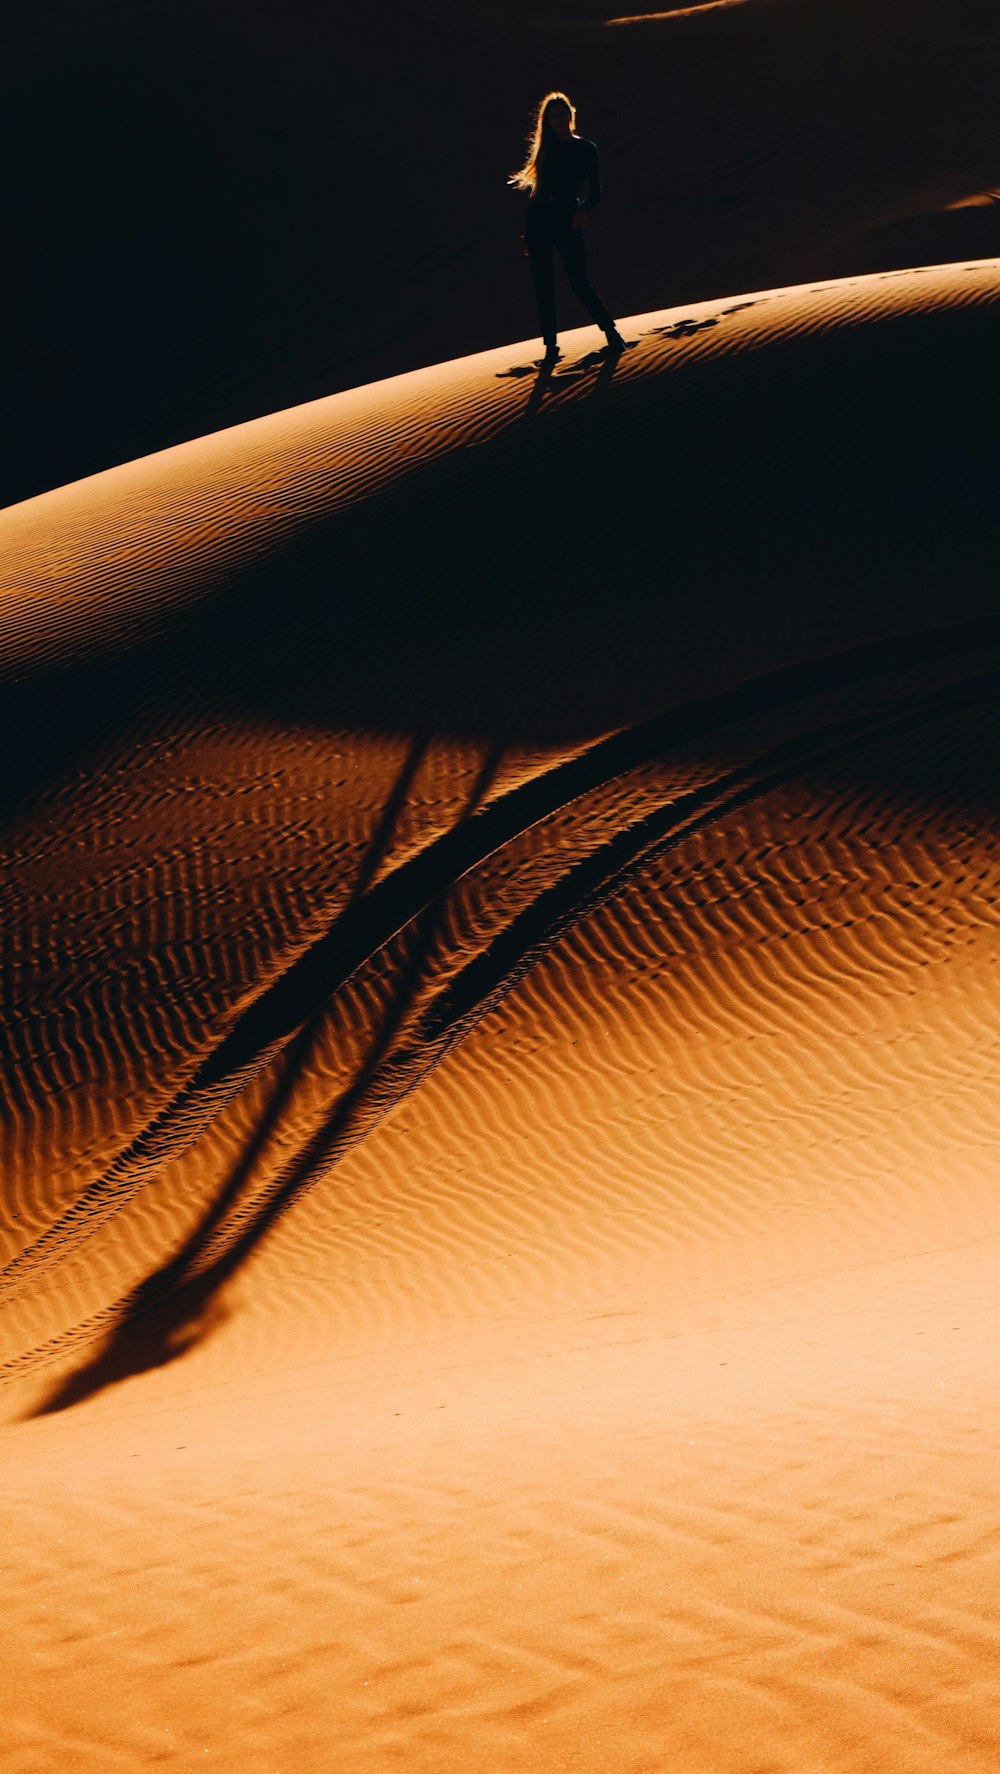 사막을 걷는 여자